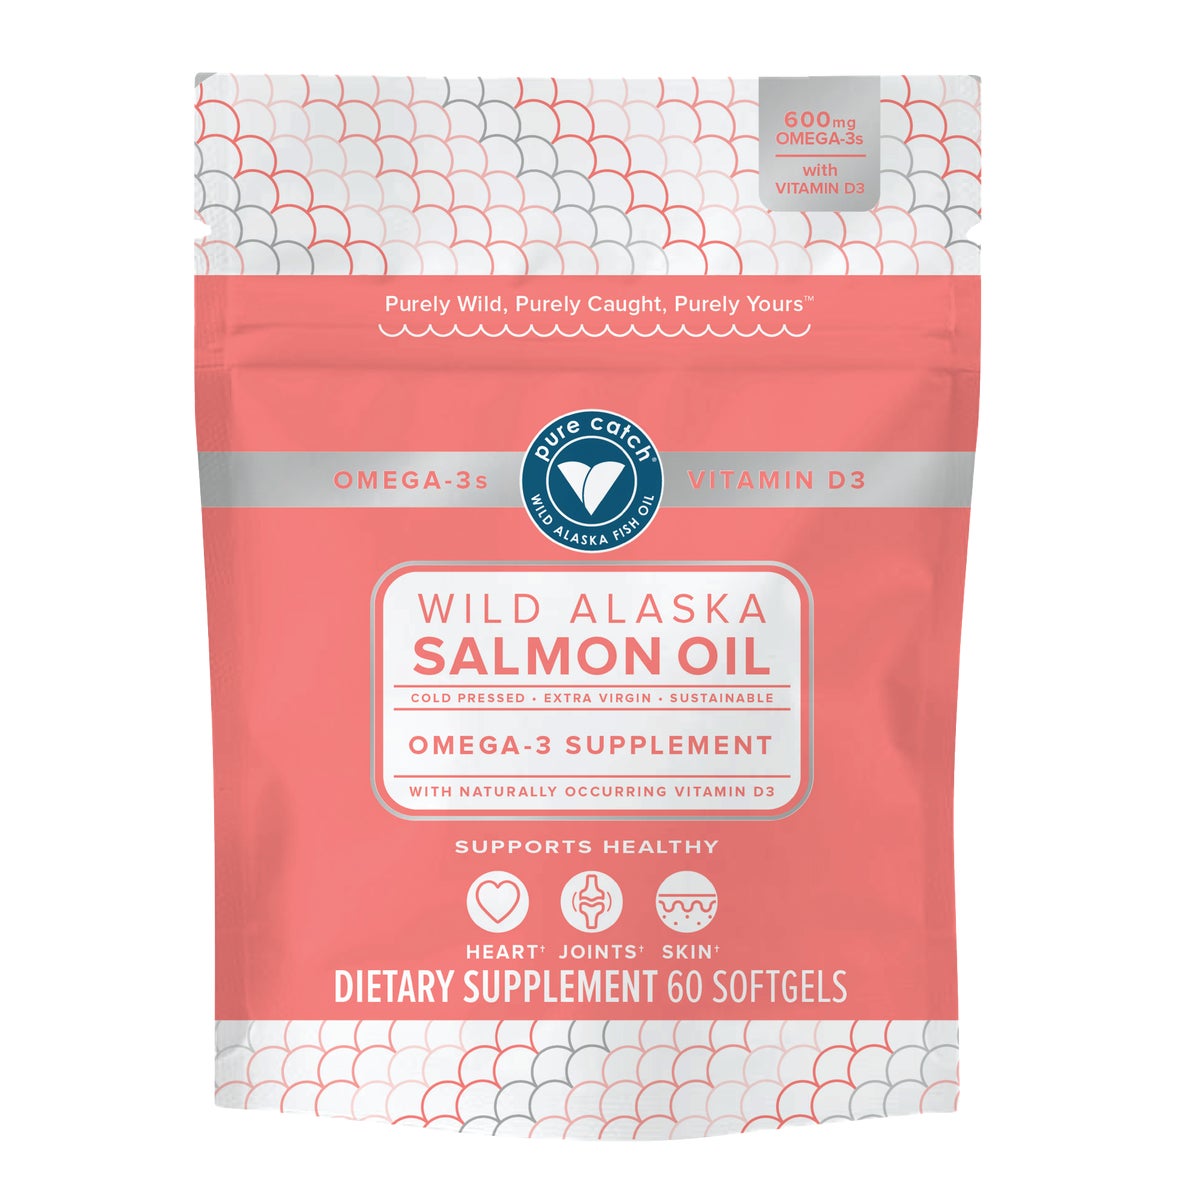 Wild Alaska Salmon Oil Supplement